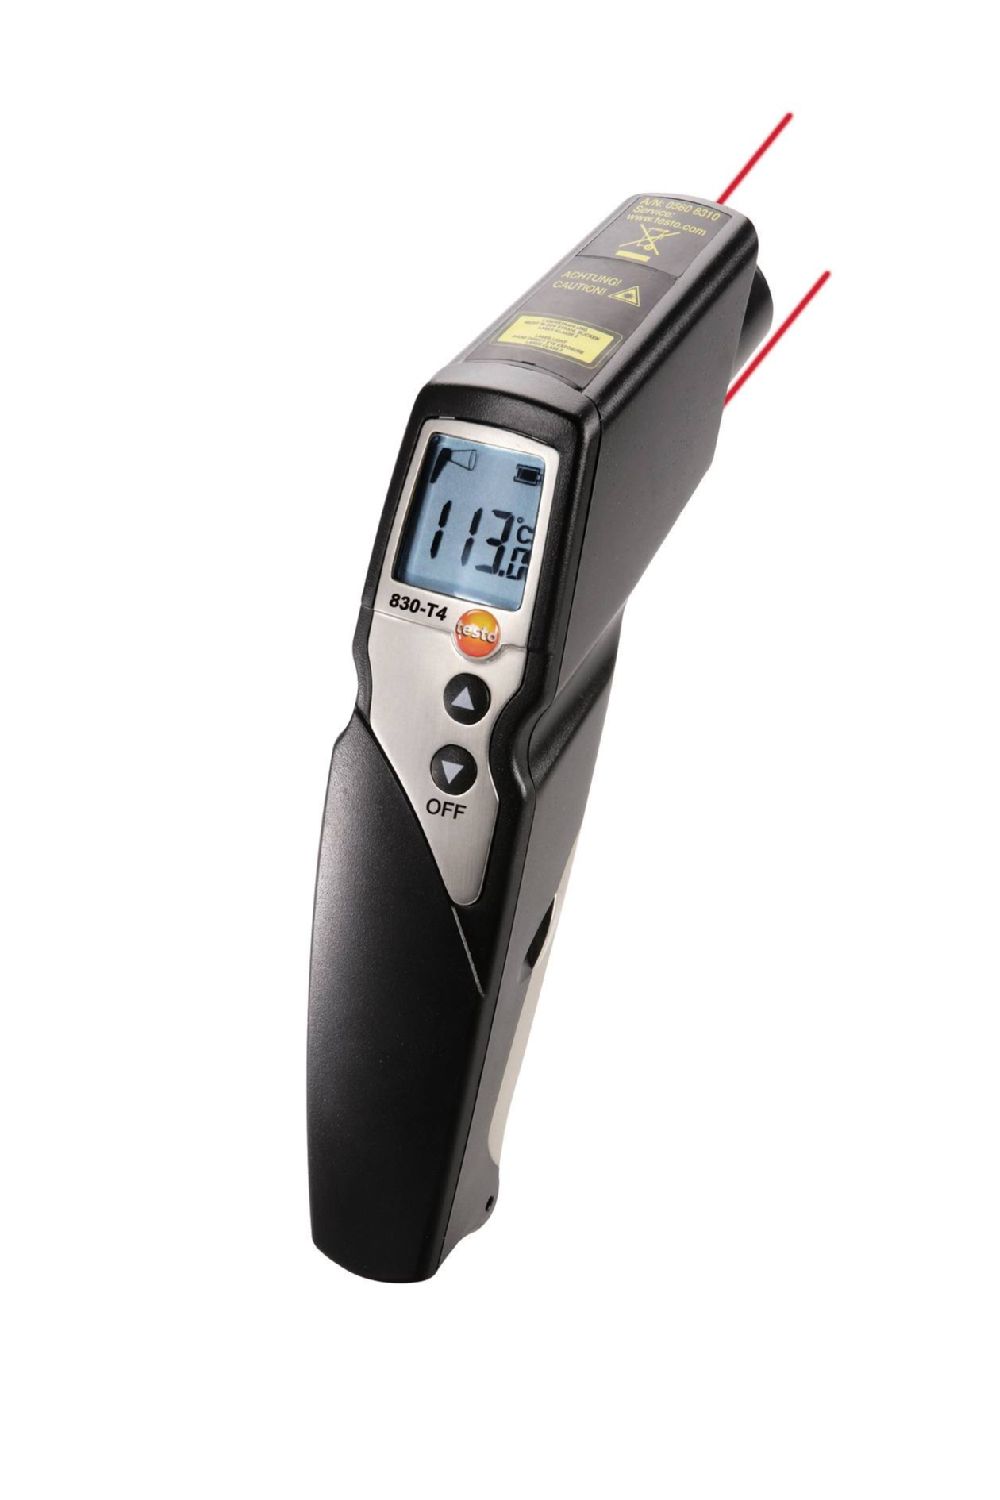 Set testo 830-T4 - Infrarot-Thermometer